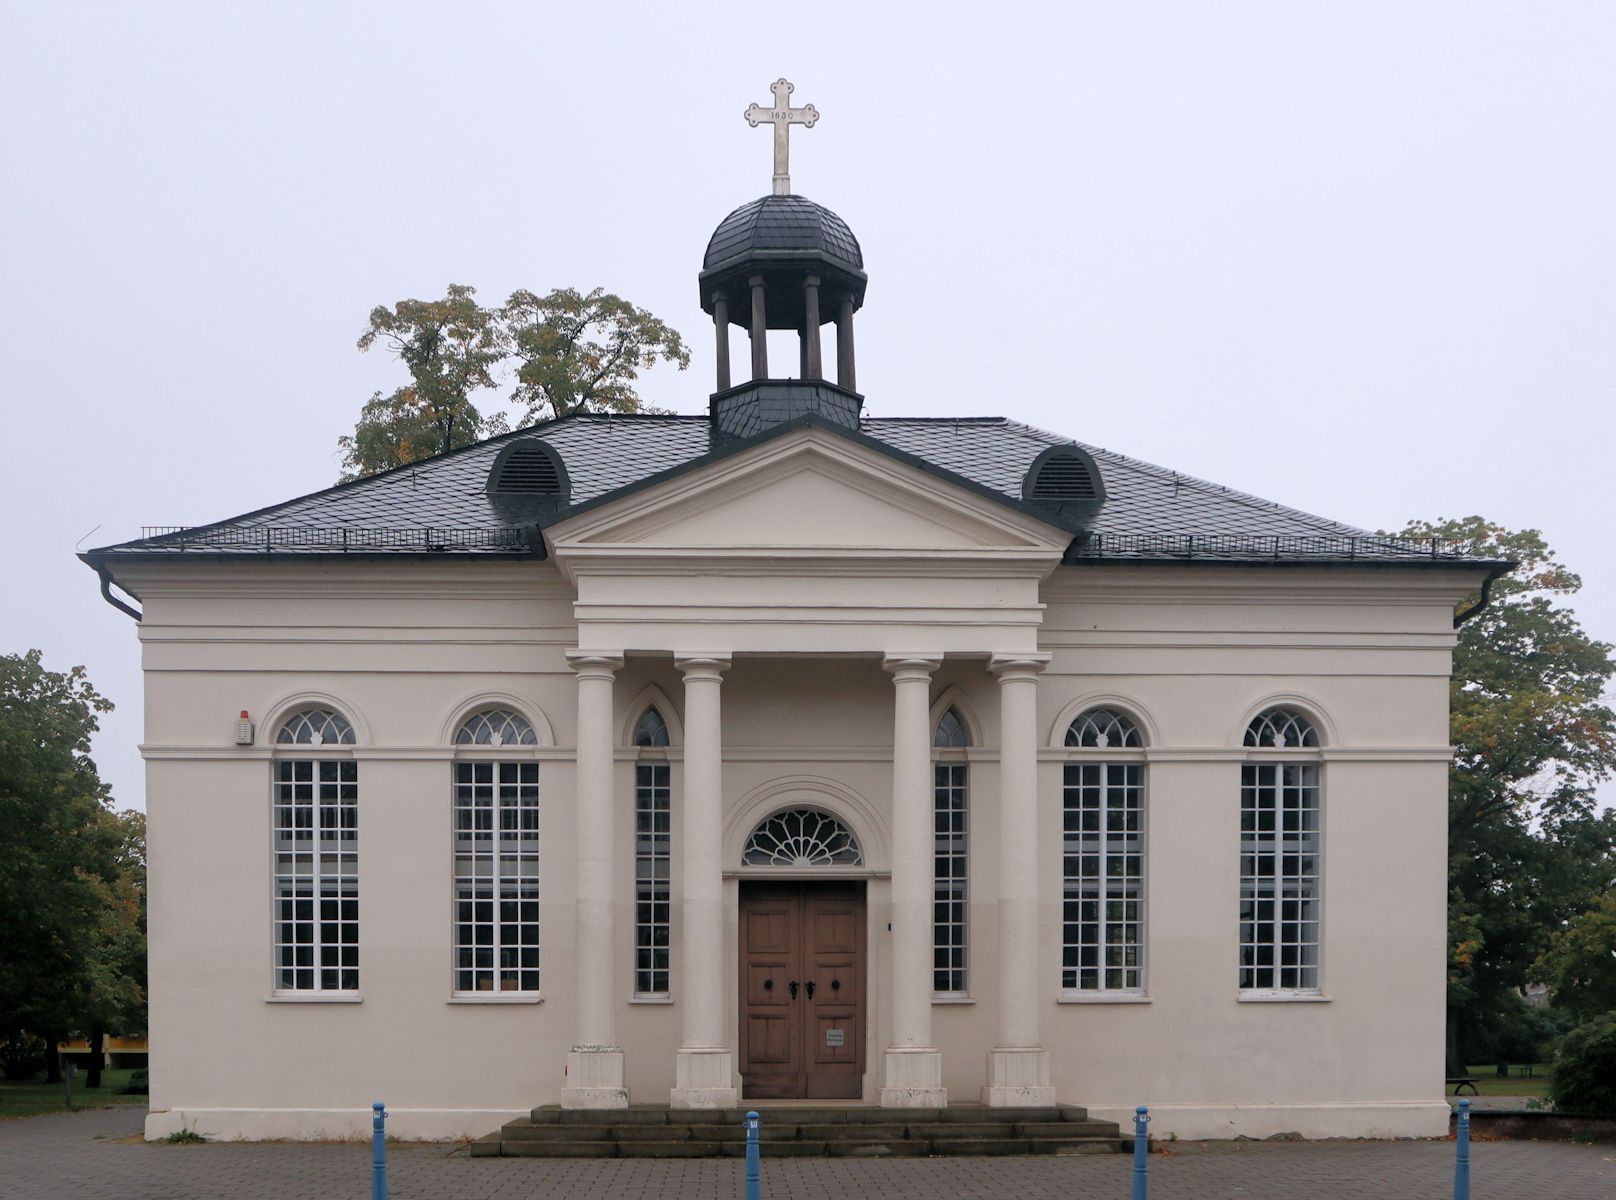 Paul-Gerhardt-Kapelle in Gräfenhainichen